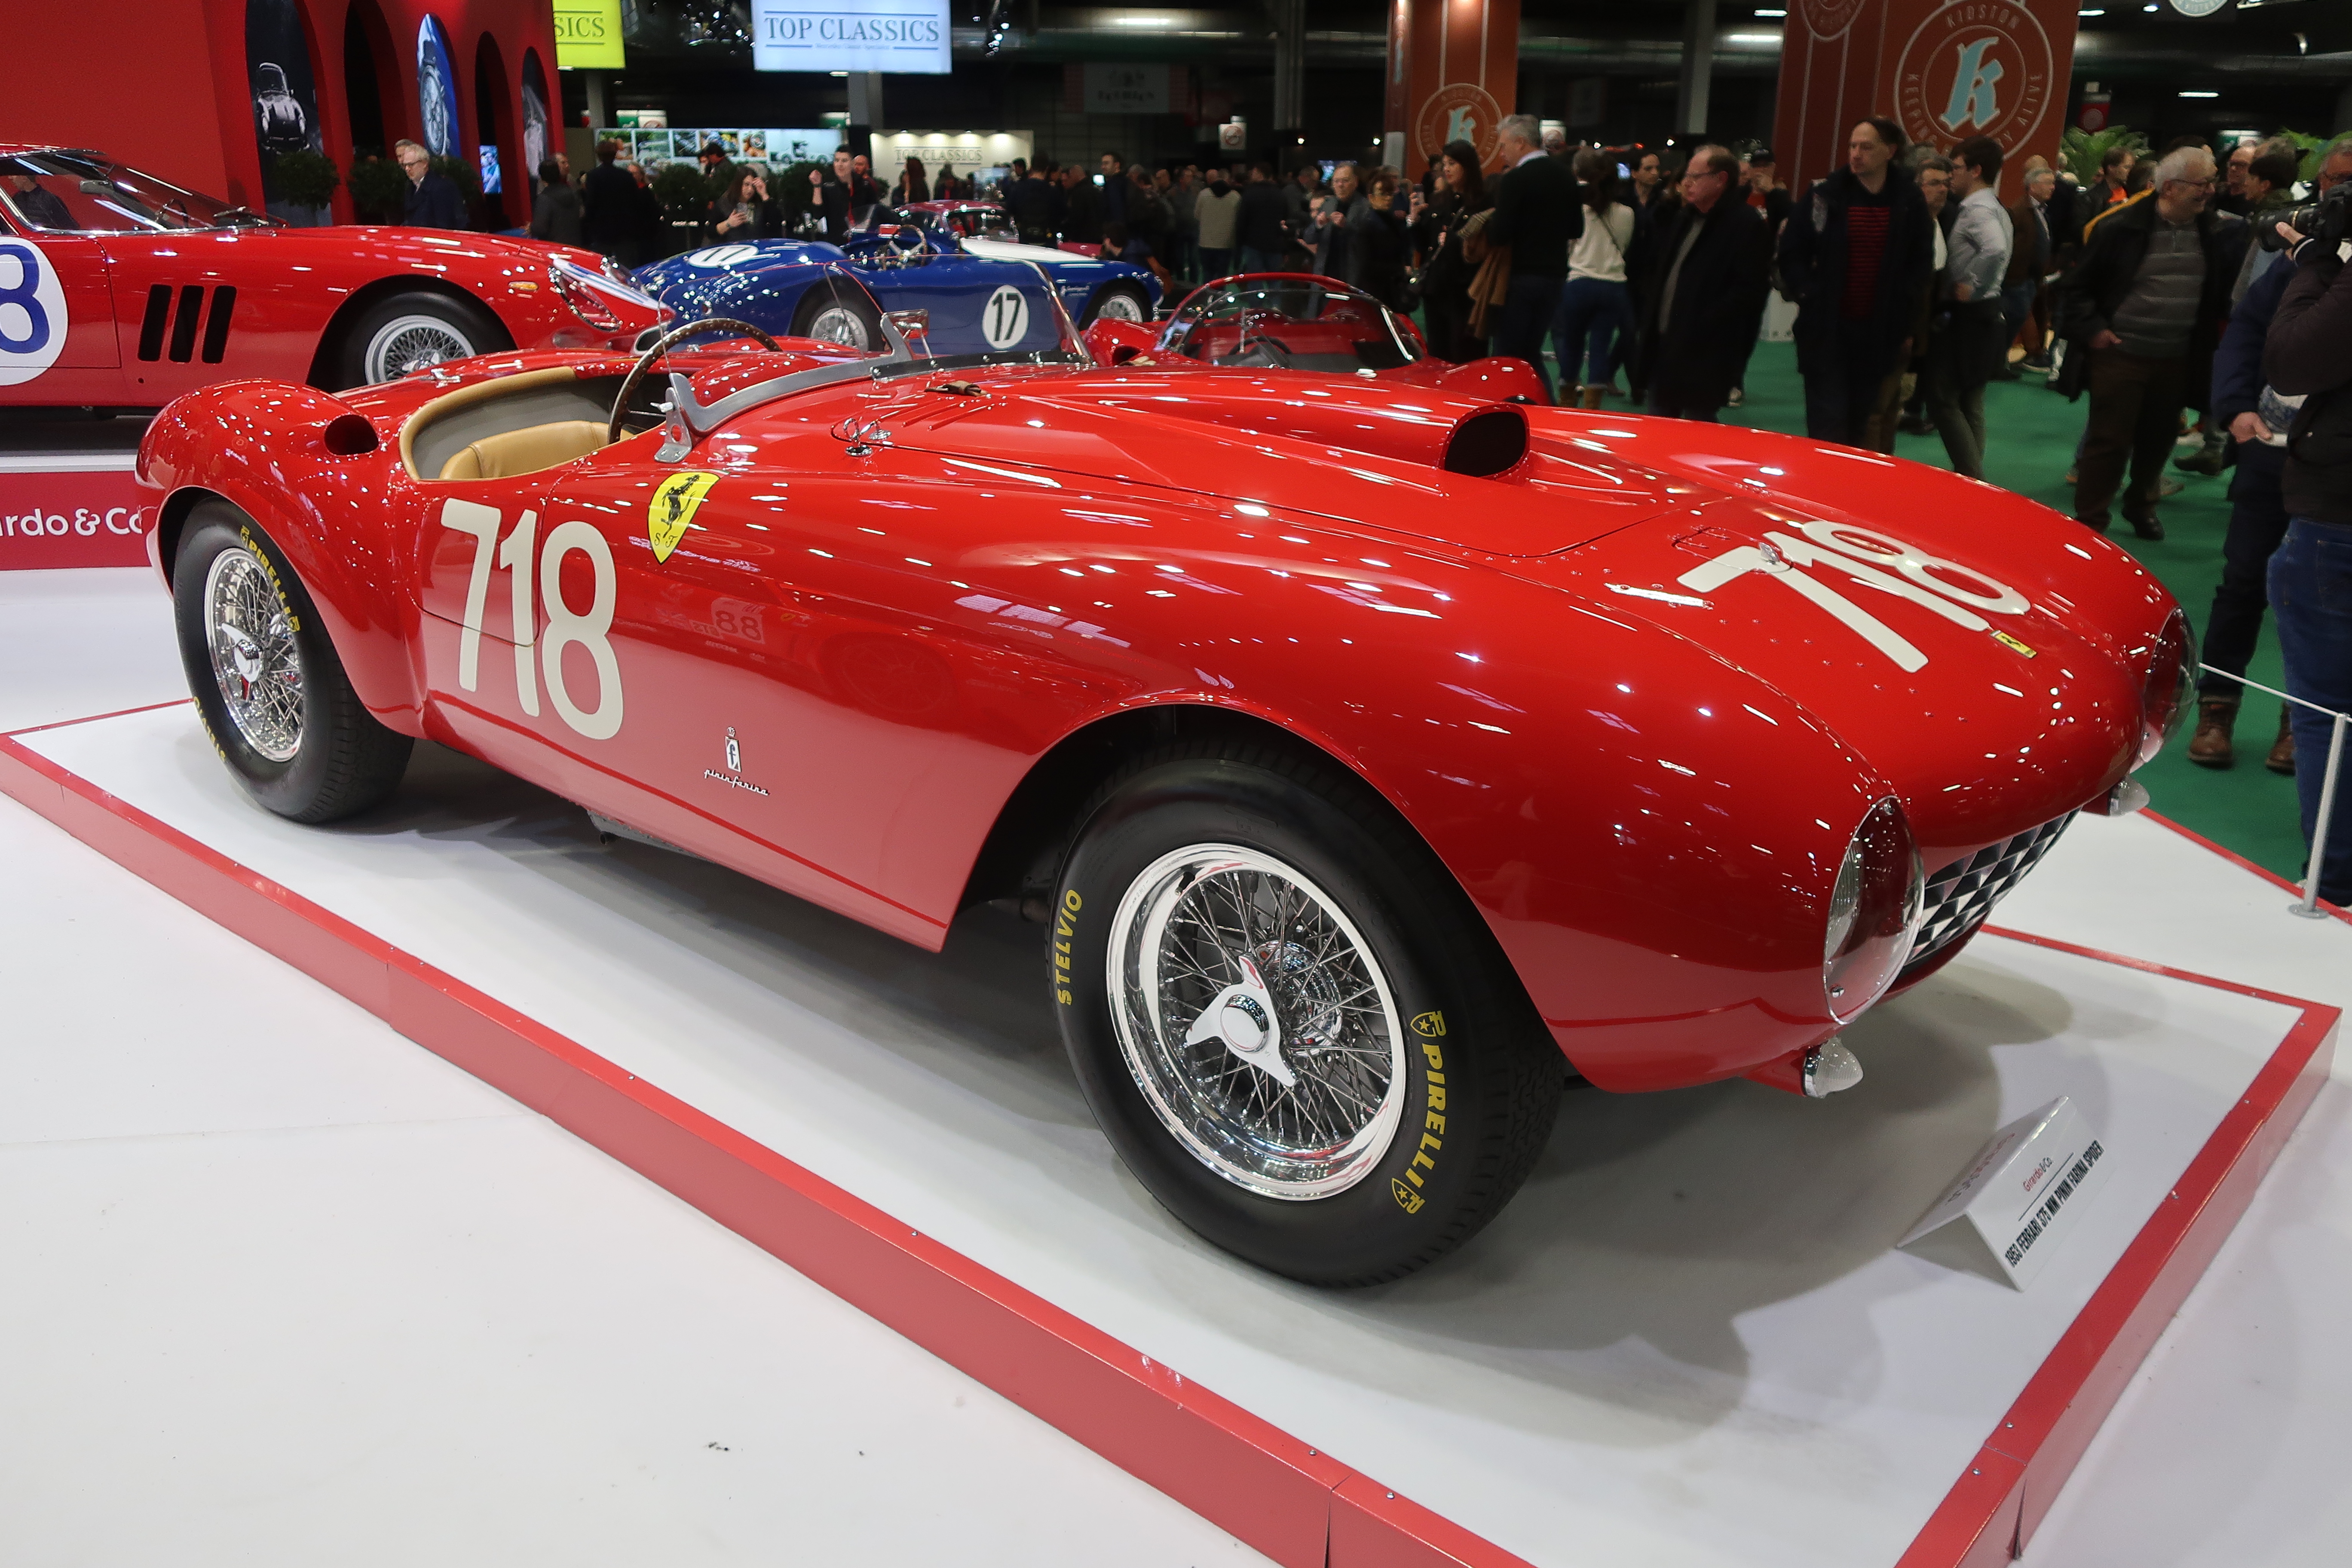 Det simpelthen florerte av nydelige Ferrarier på Retromobile - som man aner på dette bildet- med min personlige favoritt fremst i bildet 1953 375 MM Pinin Farina Spider.